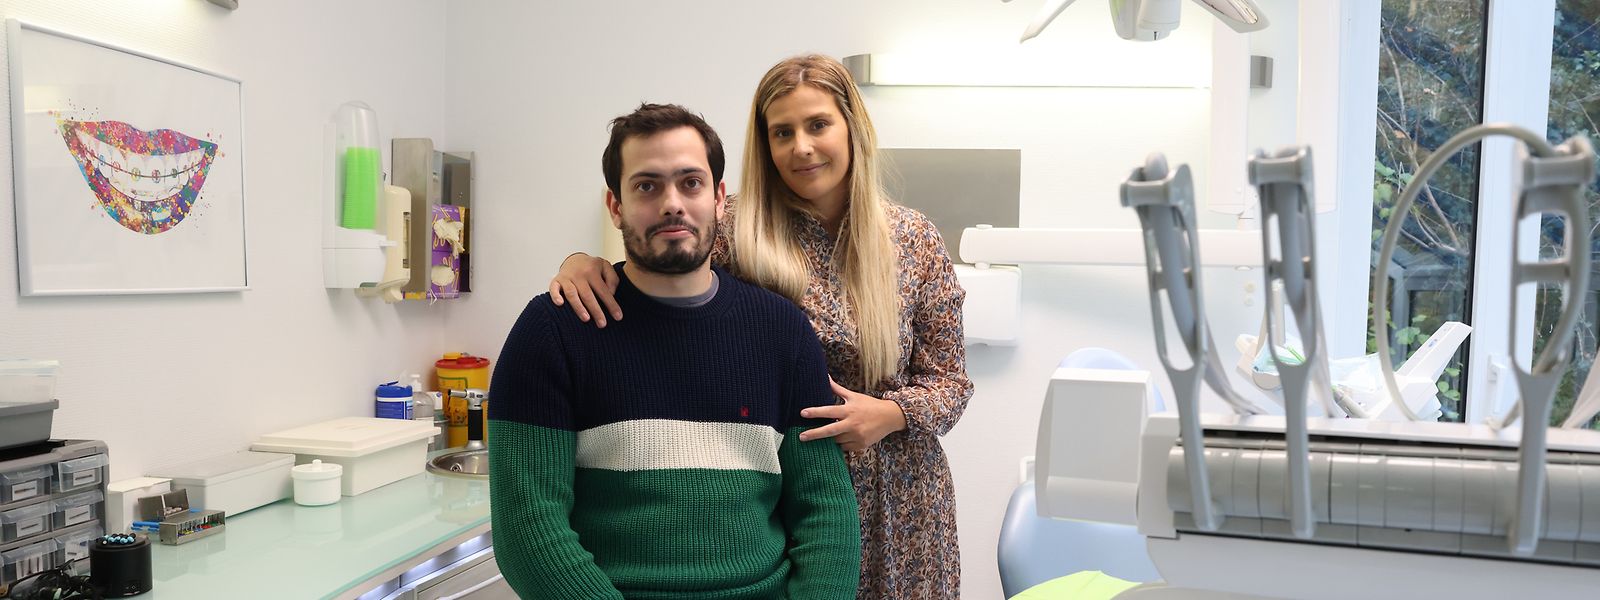 Ricardo Tavares e Maria Campêlo têm uma clínica dentária em Clervaux, outra em Ettelbruck e preparam-se para abrir uma terceira em Wiltz.